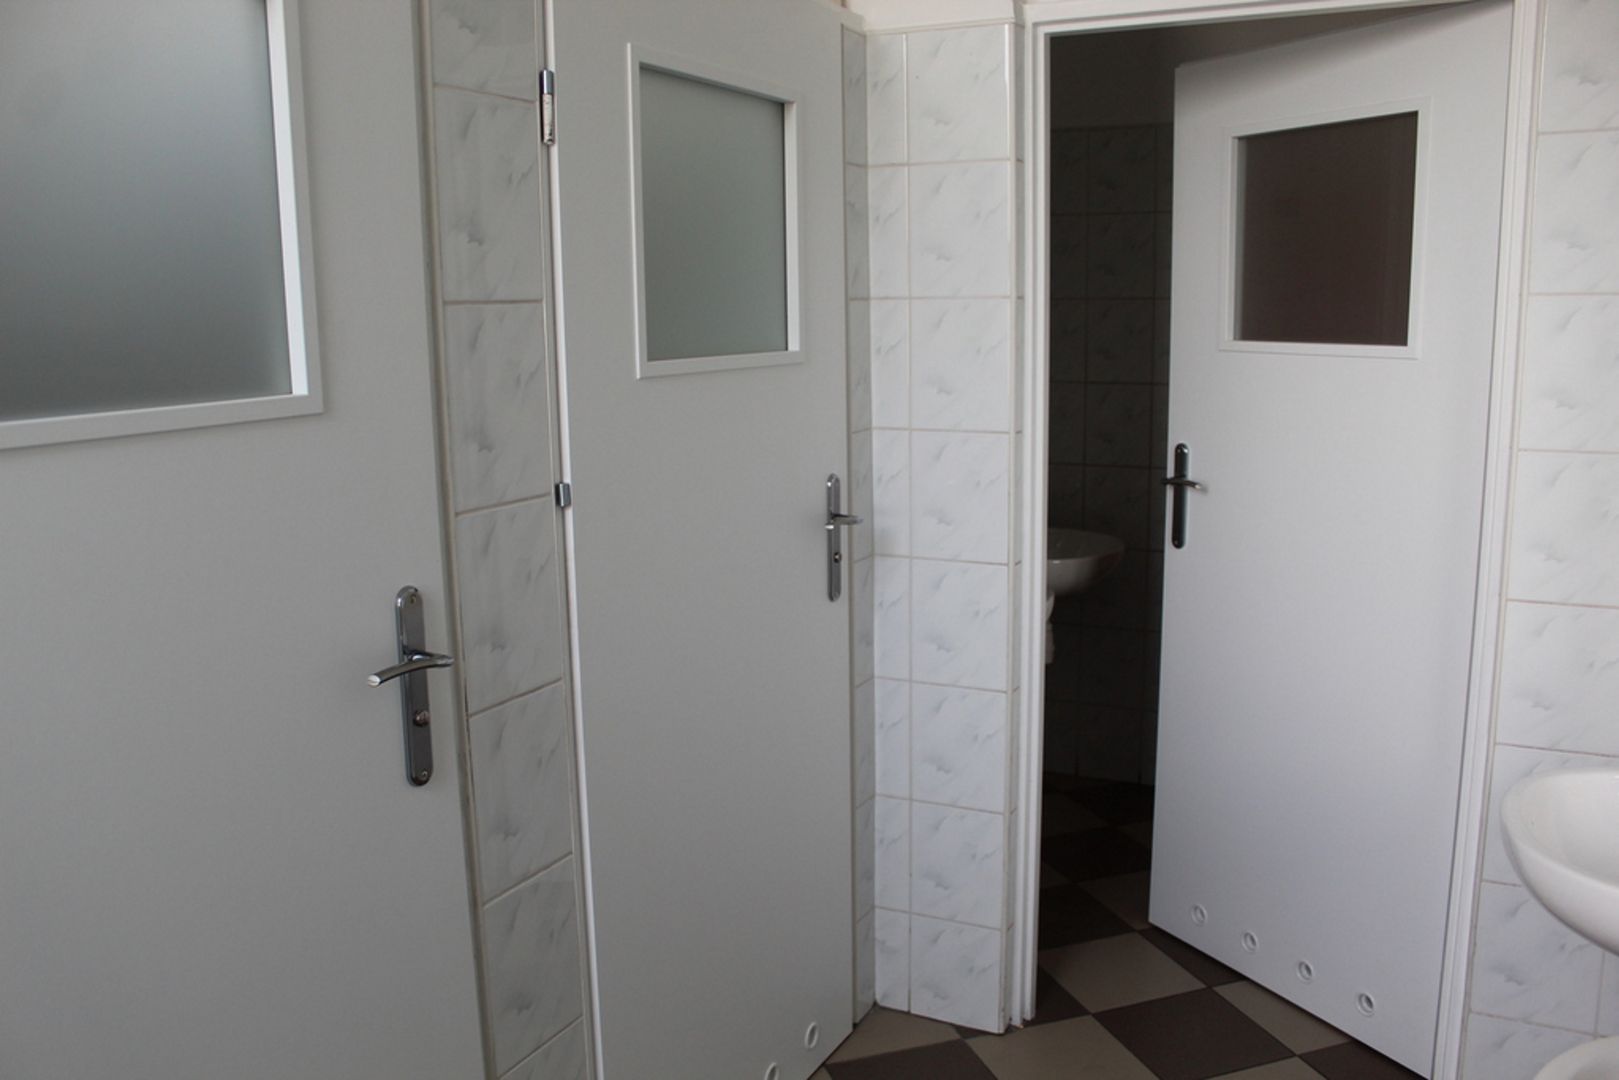 W poznańskiej szkole wymontowano drzwi do łazienek. Uczniowie oburzeni